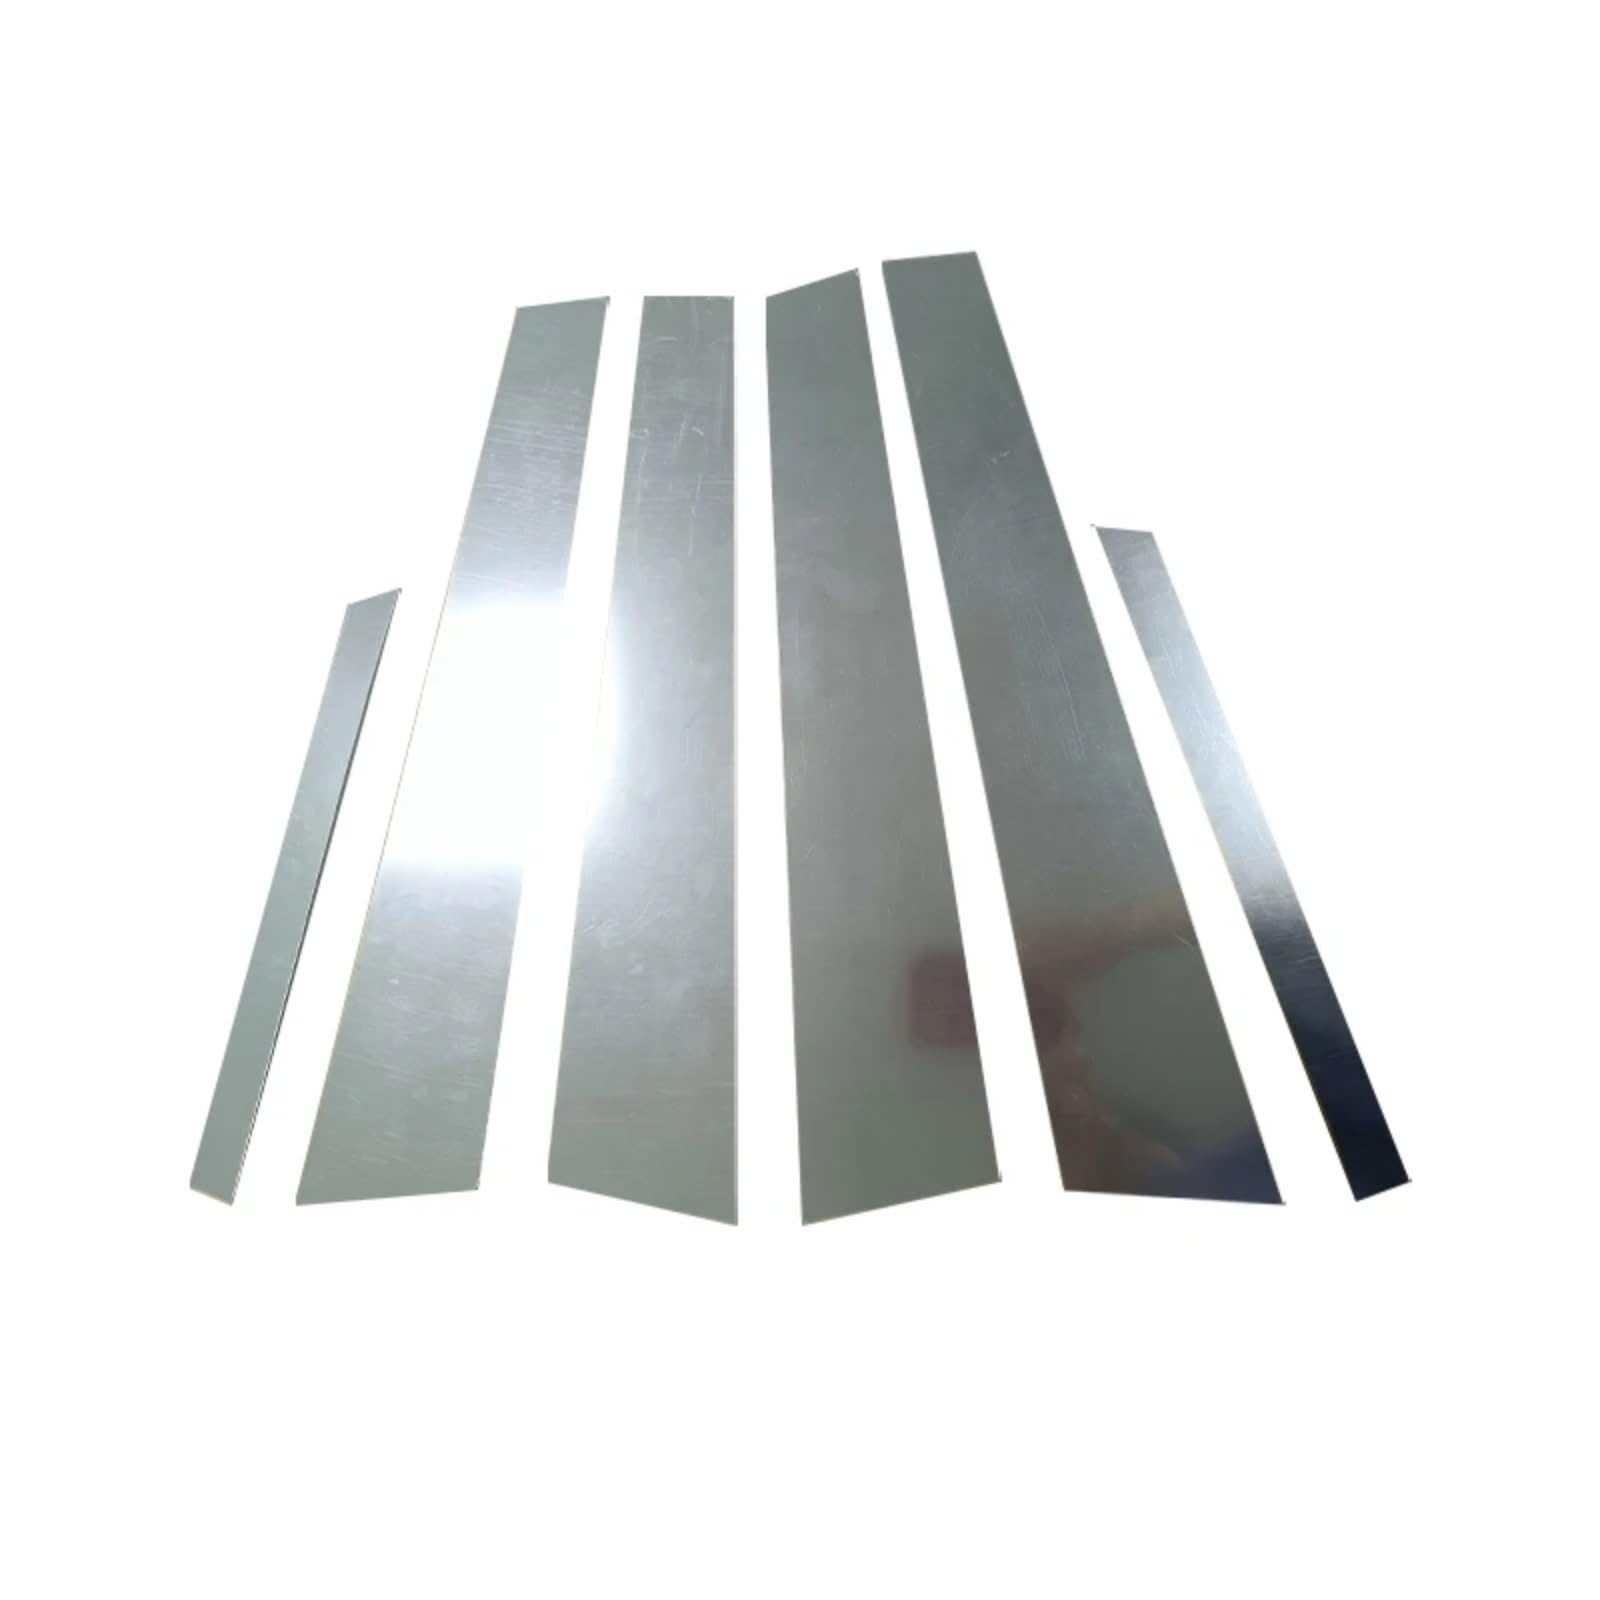 AQWAL Kompatibel Mit K&ia Für Optima Für K5 Für Magentis Für Lotze 2011-2015 Autotürfenster-Säulenpfosten-Zierabdeckungsaufkleber BC-Säulenaufkleber Autofenster-BC-Säule von AQWAL